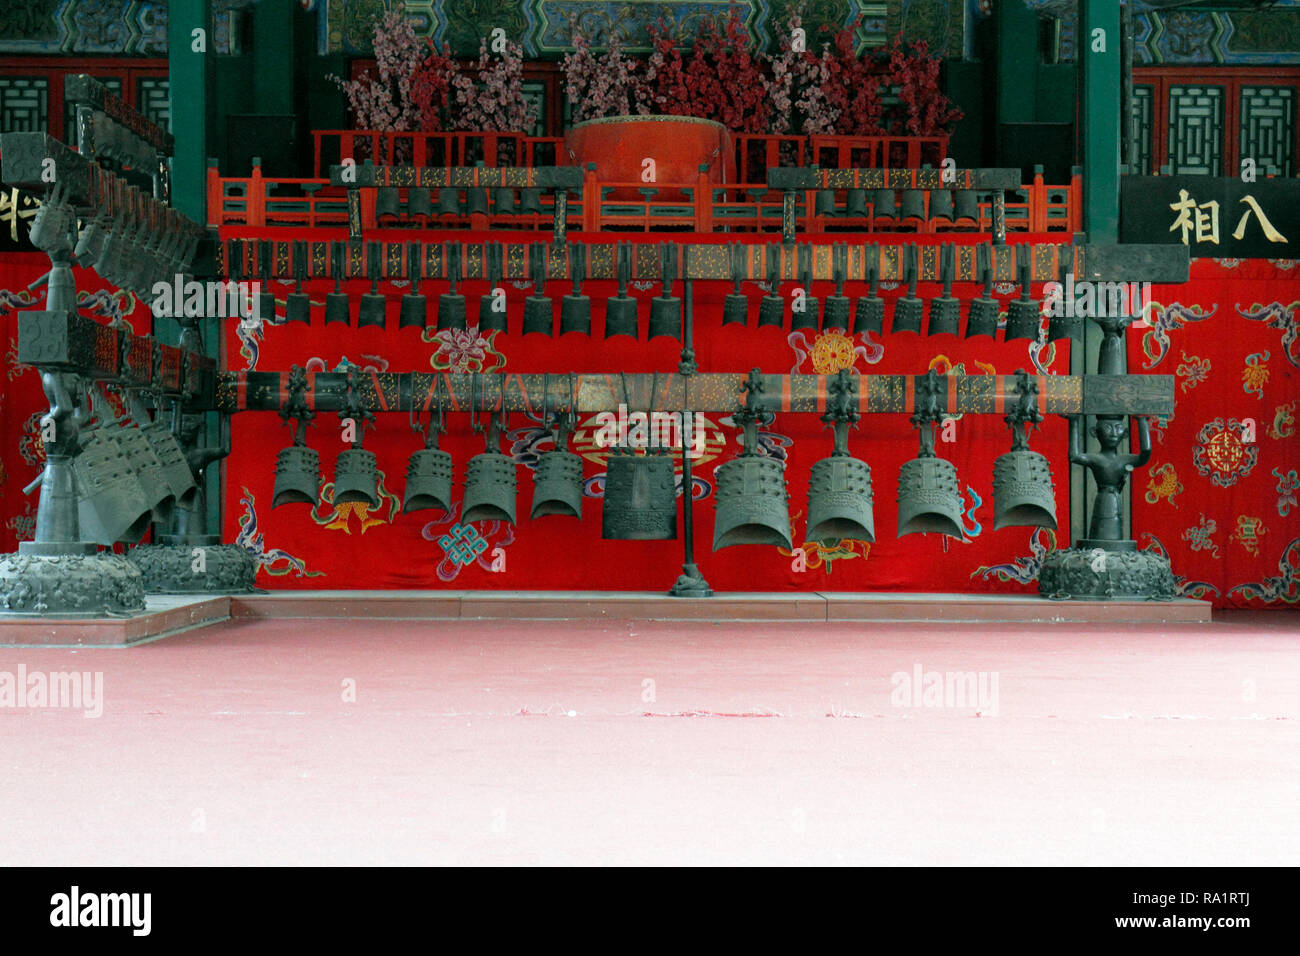 Bianzhong, eine alte chinesische Musikinstrument, bestehend aus einer Reihe von bronzenen Glocken. Chime Bells. Die große Bühne, Sommerpalast, Peking, China. Stockfoto